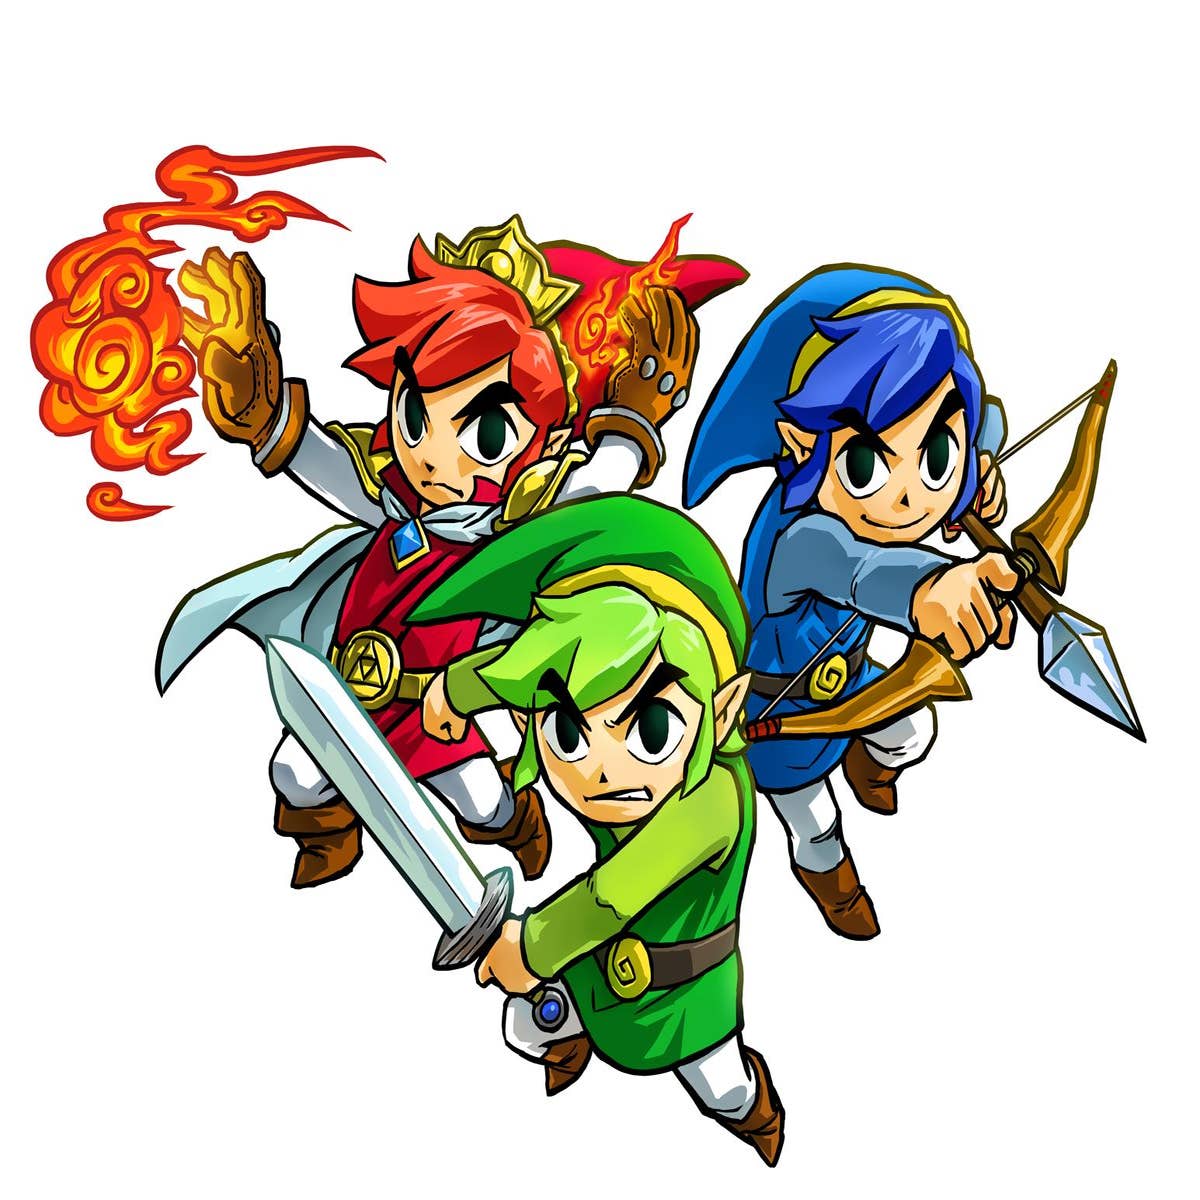  The Legend of Zelda: TriForce Heroes - 3DS : Nintendo of  America: Video Games